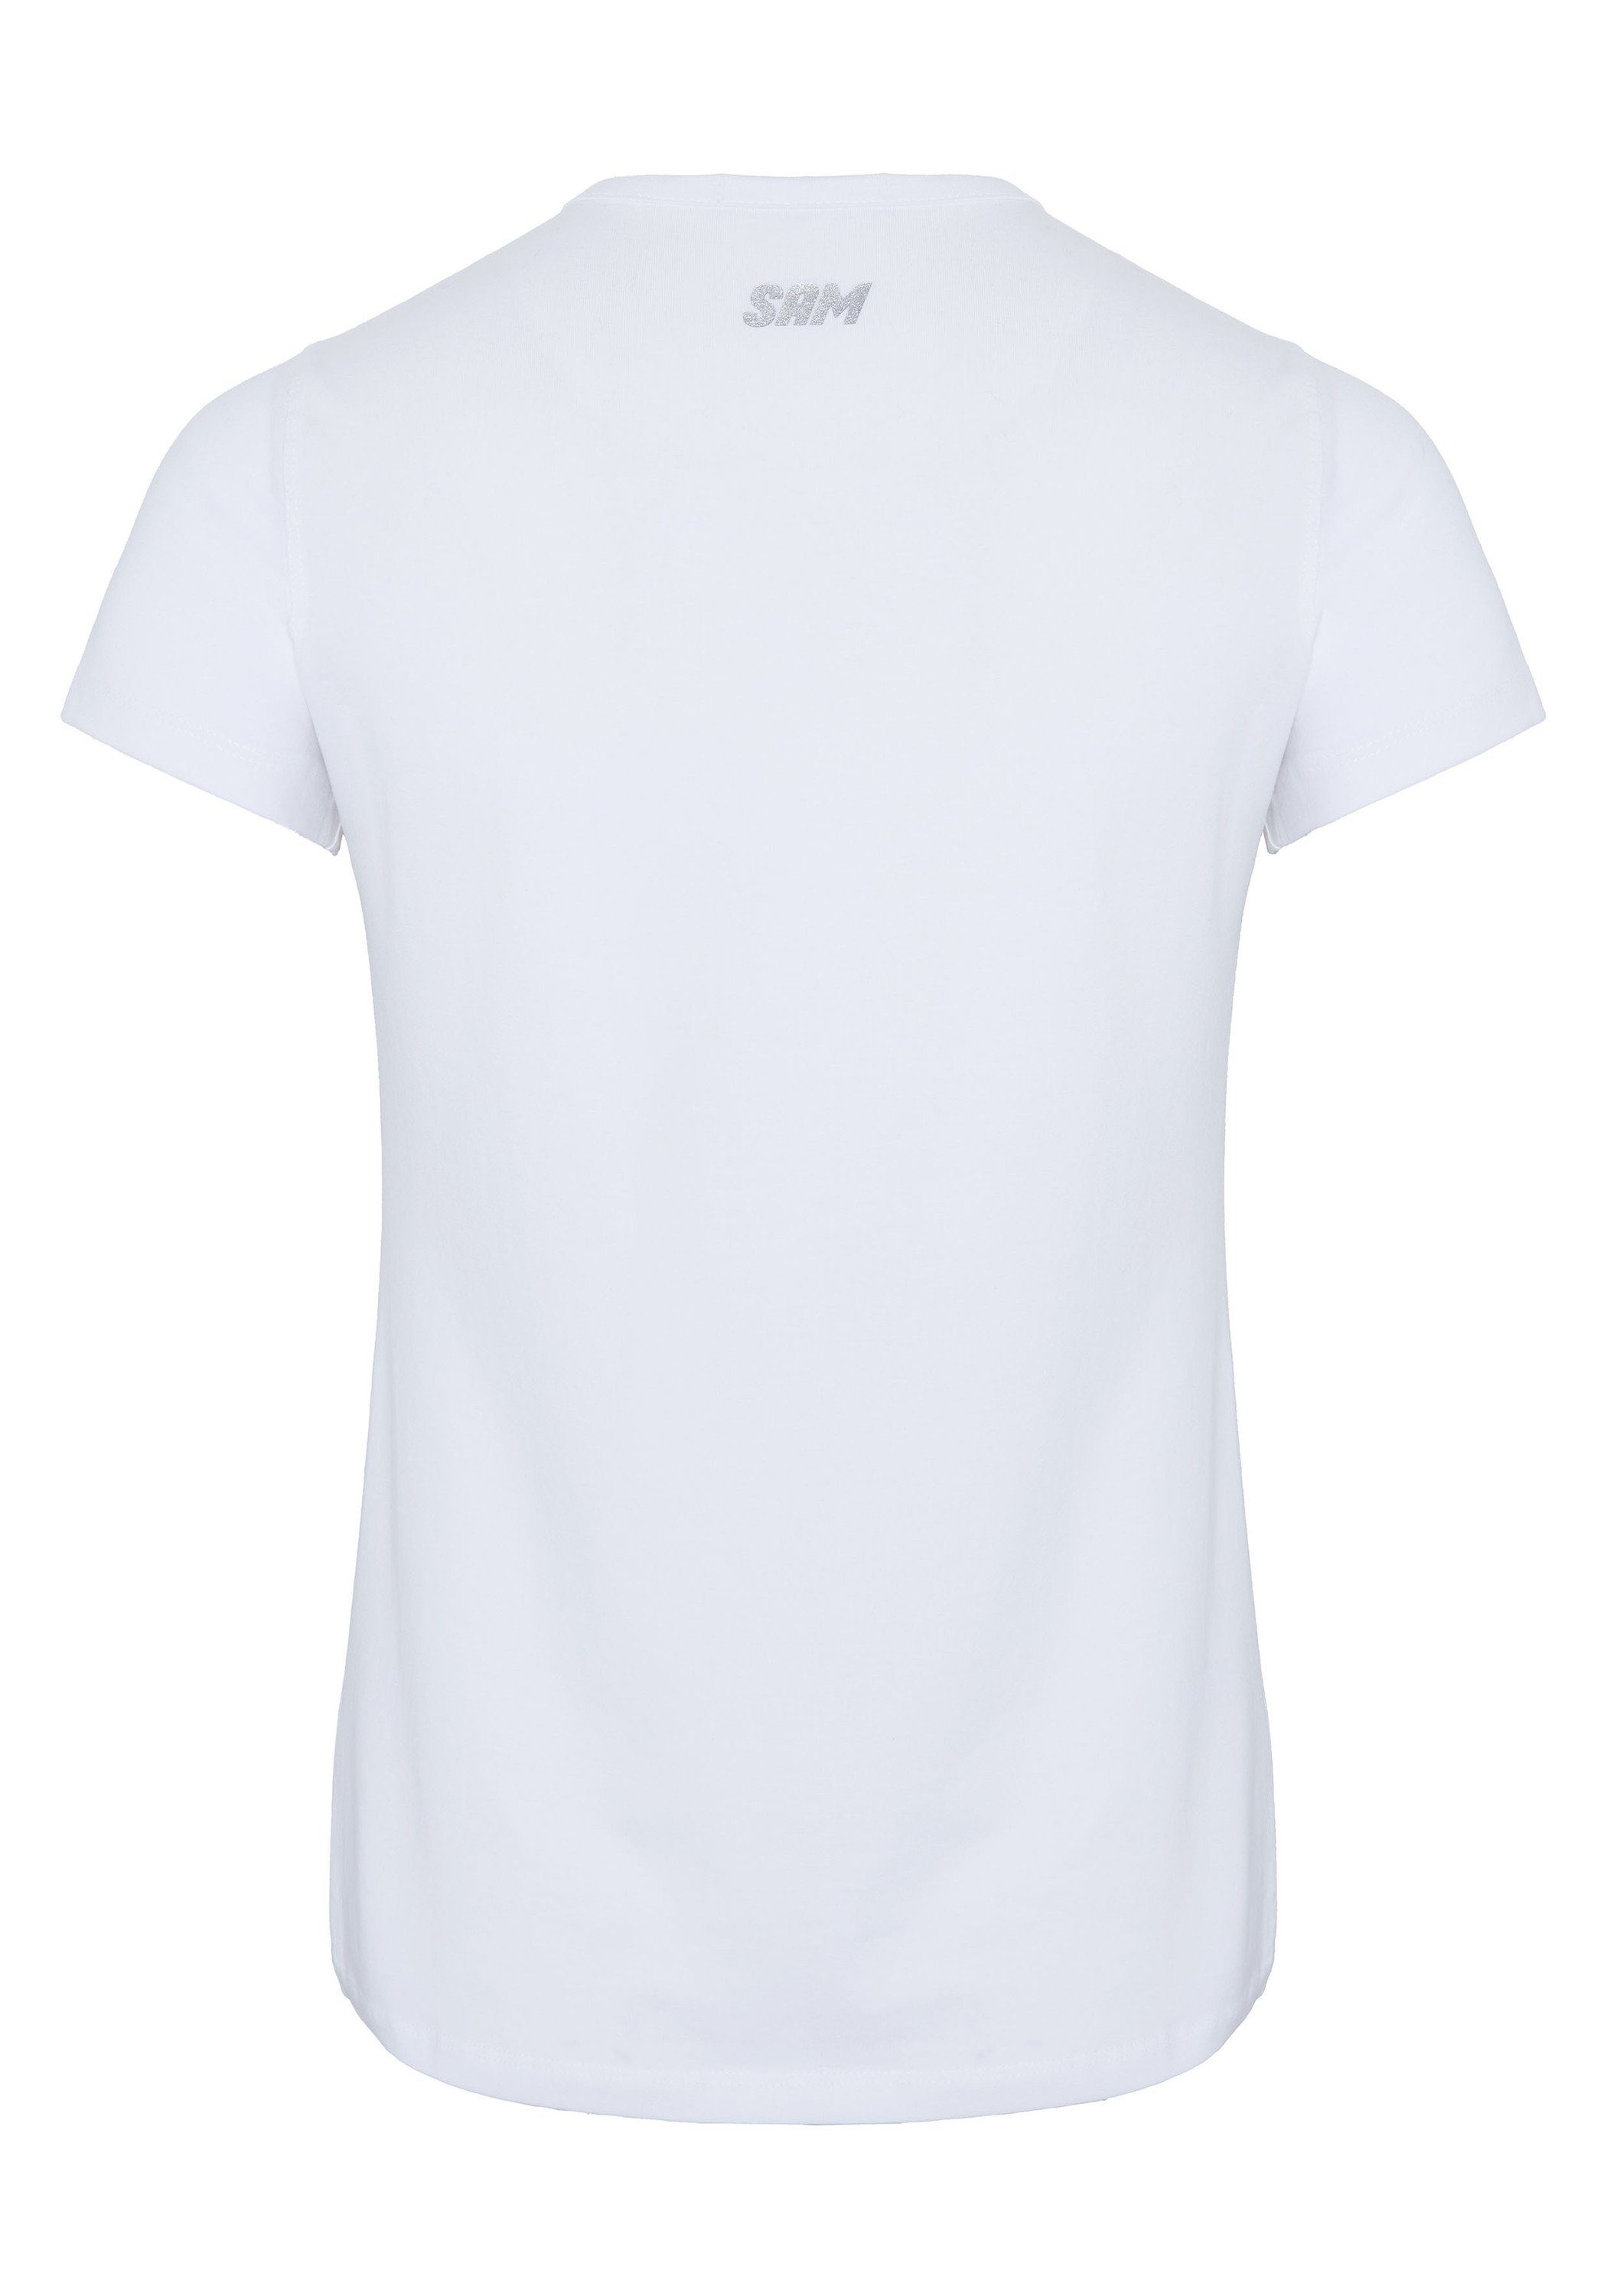 Sam Bright Uncle glitzerndem 11-0601 V-Ausschnitt Print-Shirt mit White